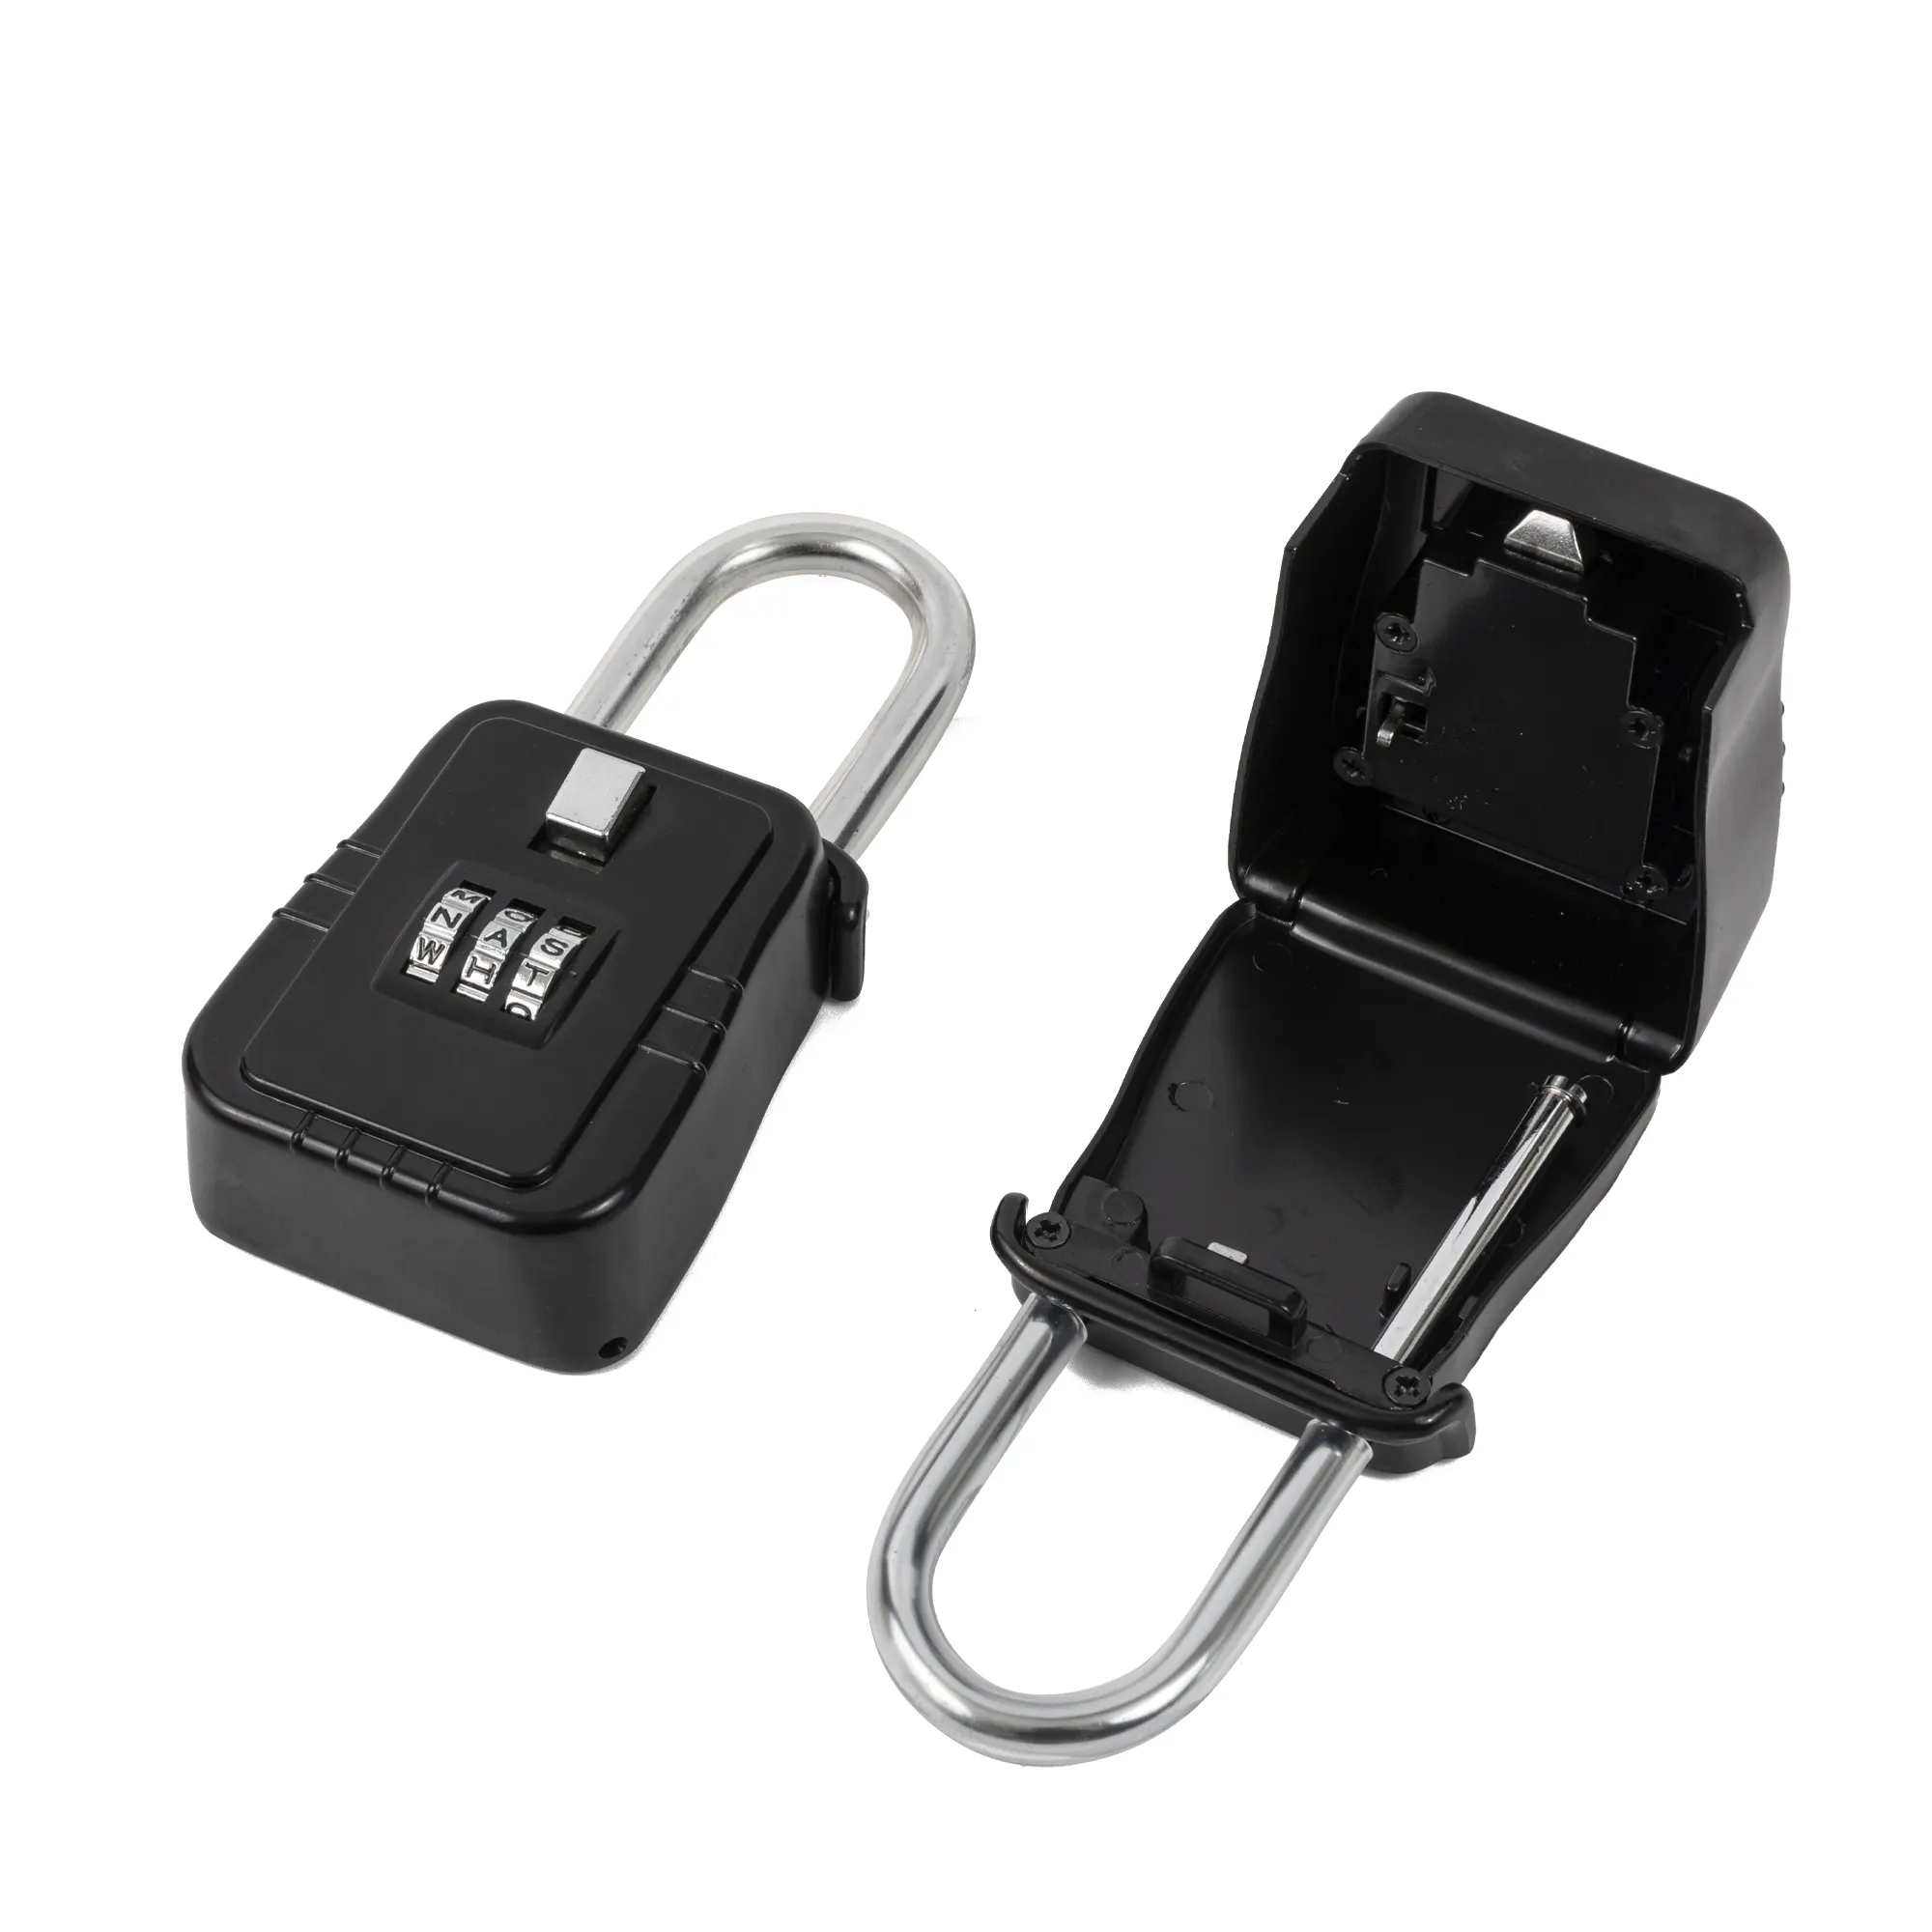 Caja de seguridad con llave personalizada, caja de almacenamiento con 4 teclas digitales